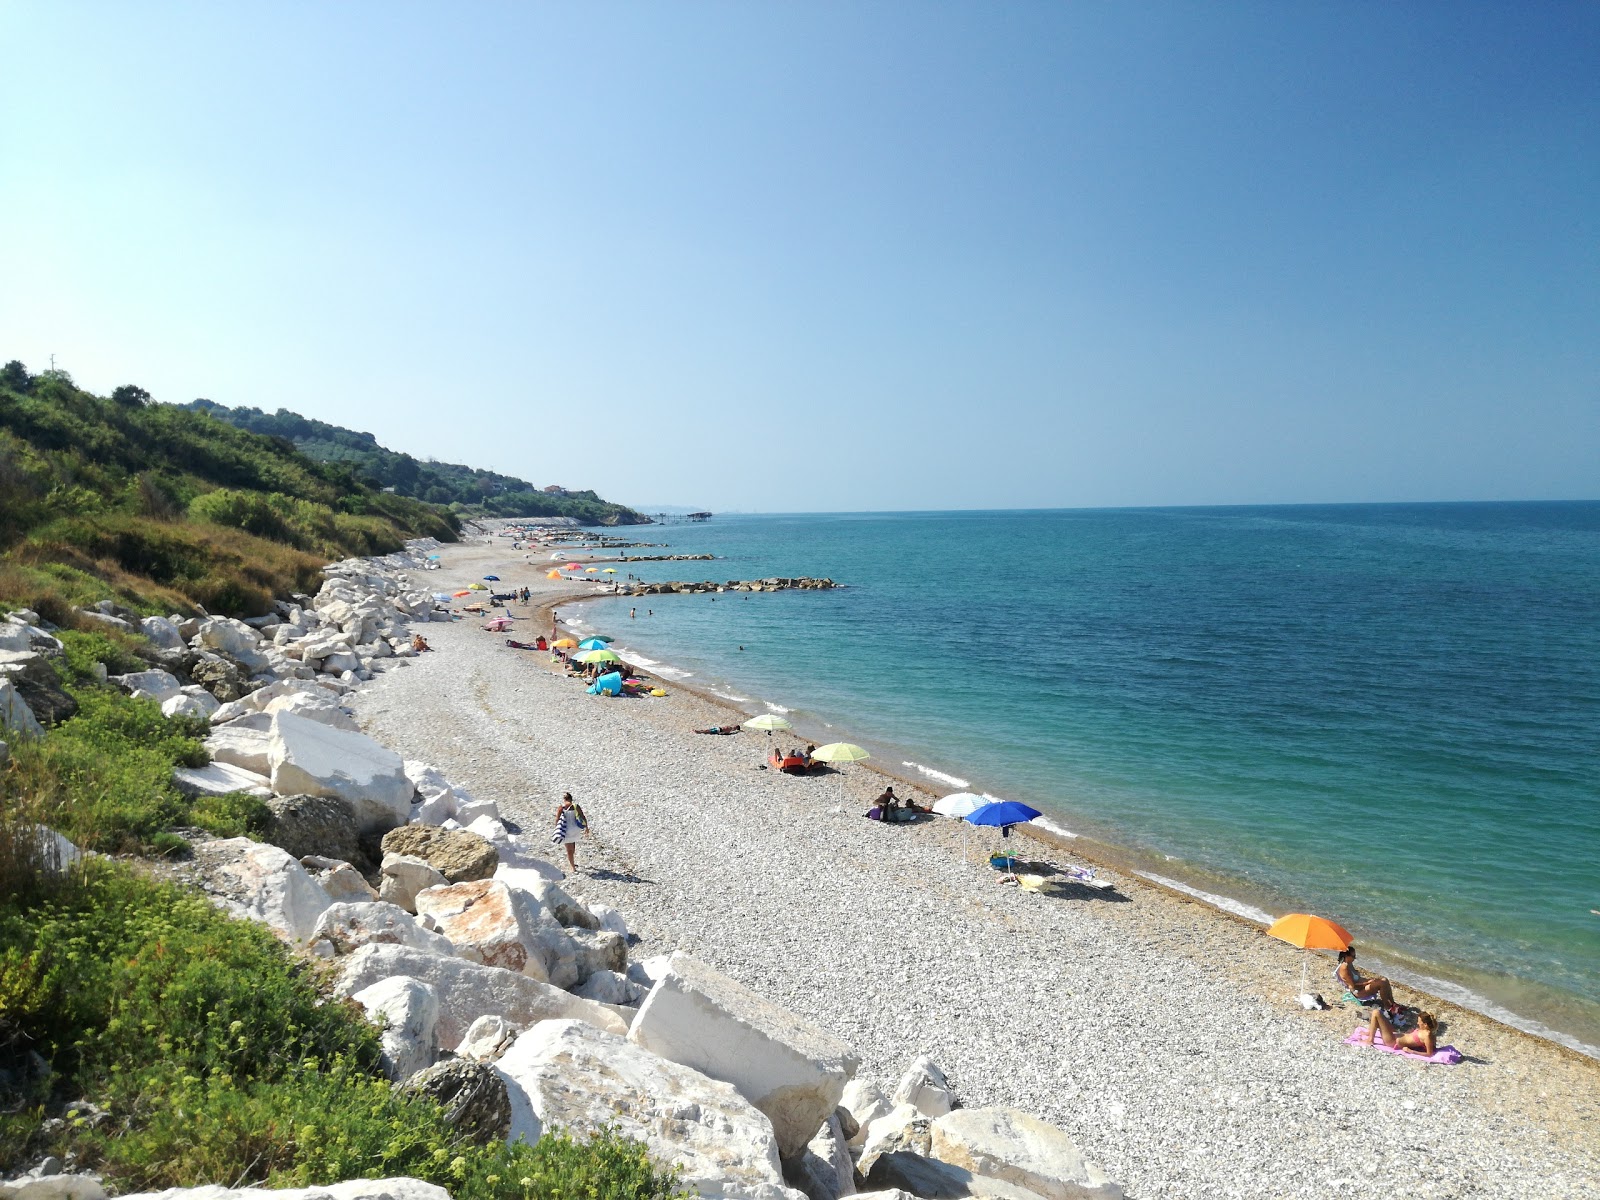 Spiaggia della Foce'in fotoğrafı hafif çakıl yüzey ile